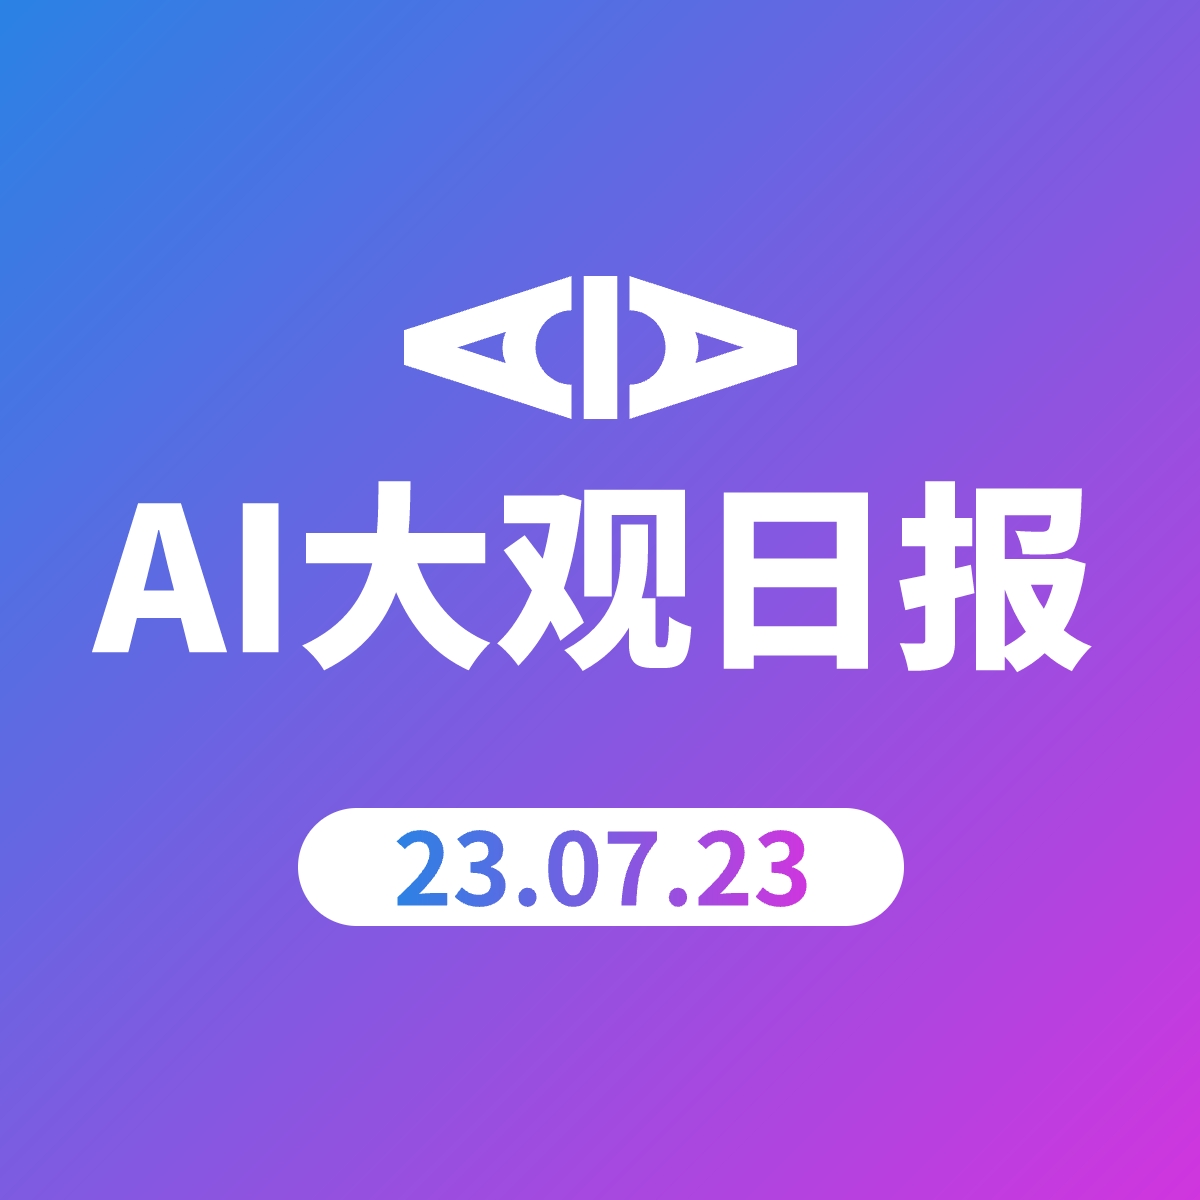 AI大观日报 | 23.07.23